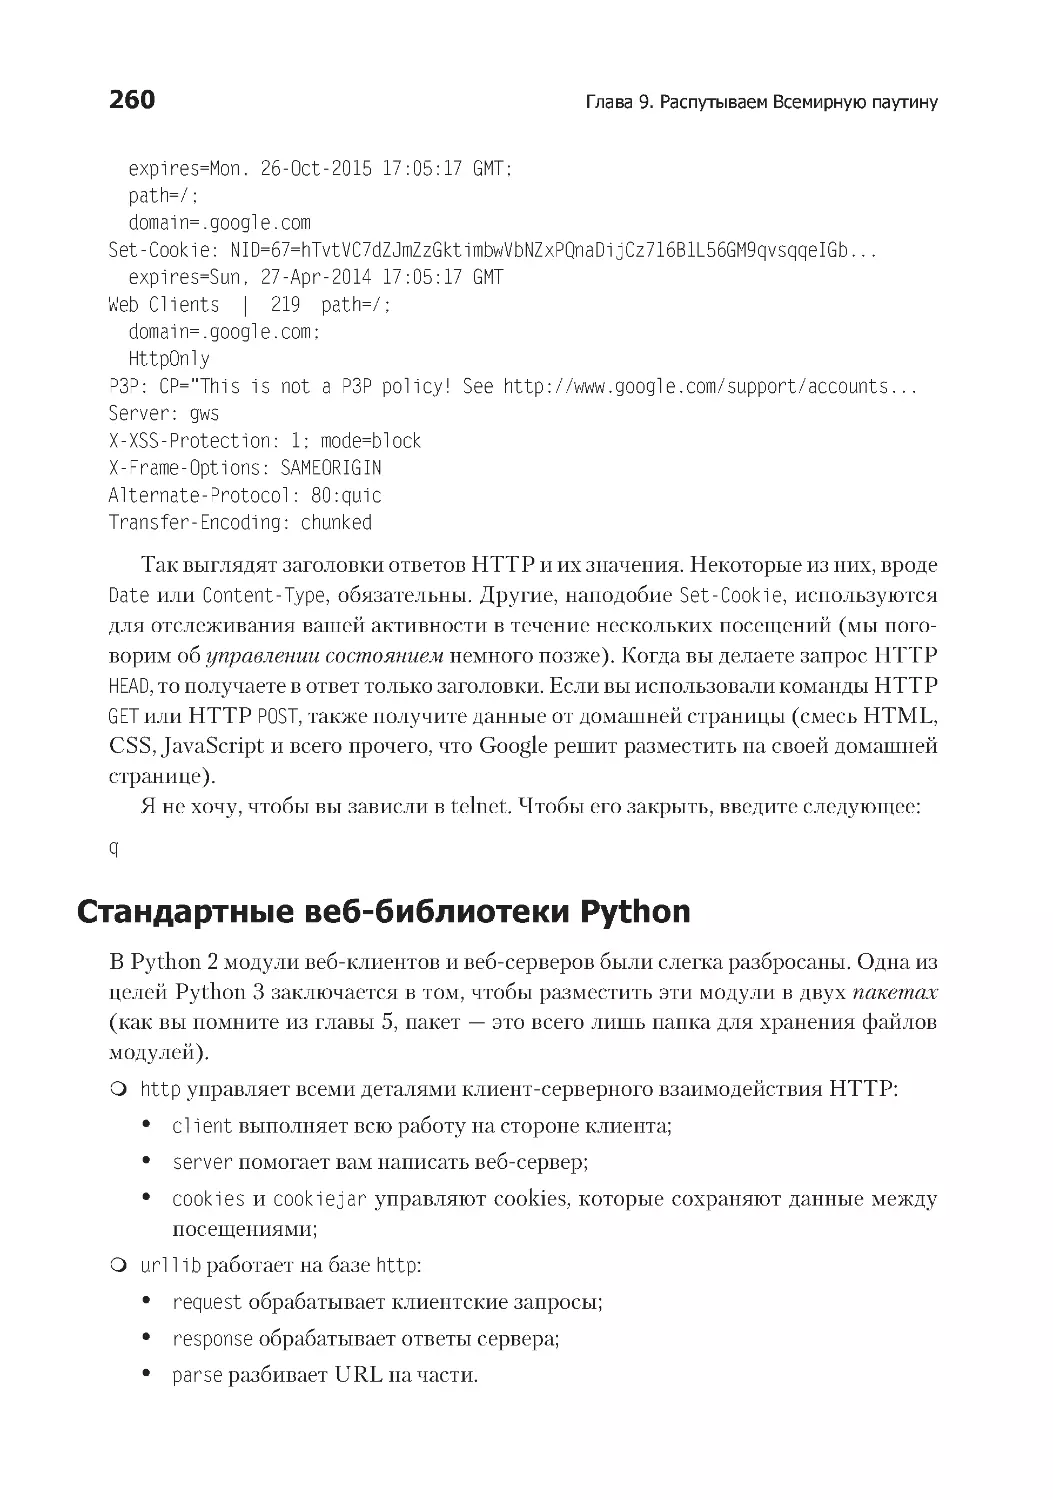 Стандартные веб-библиотеки Python